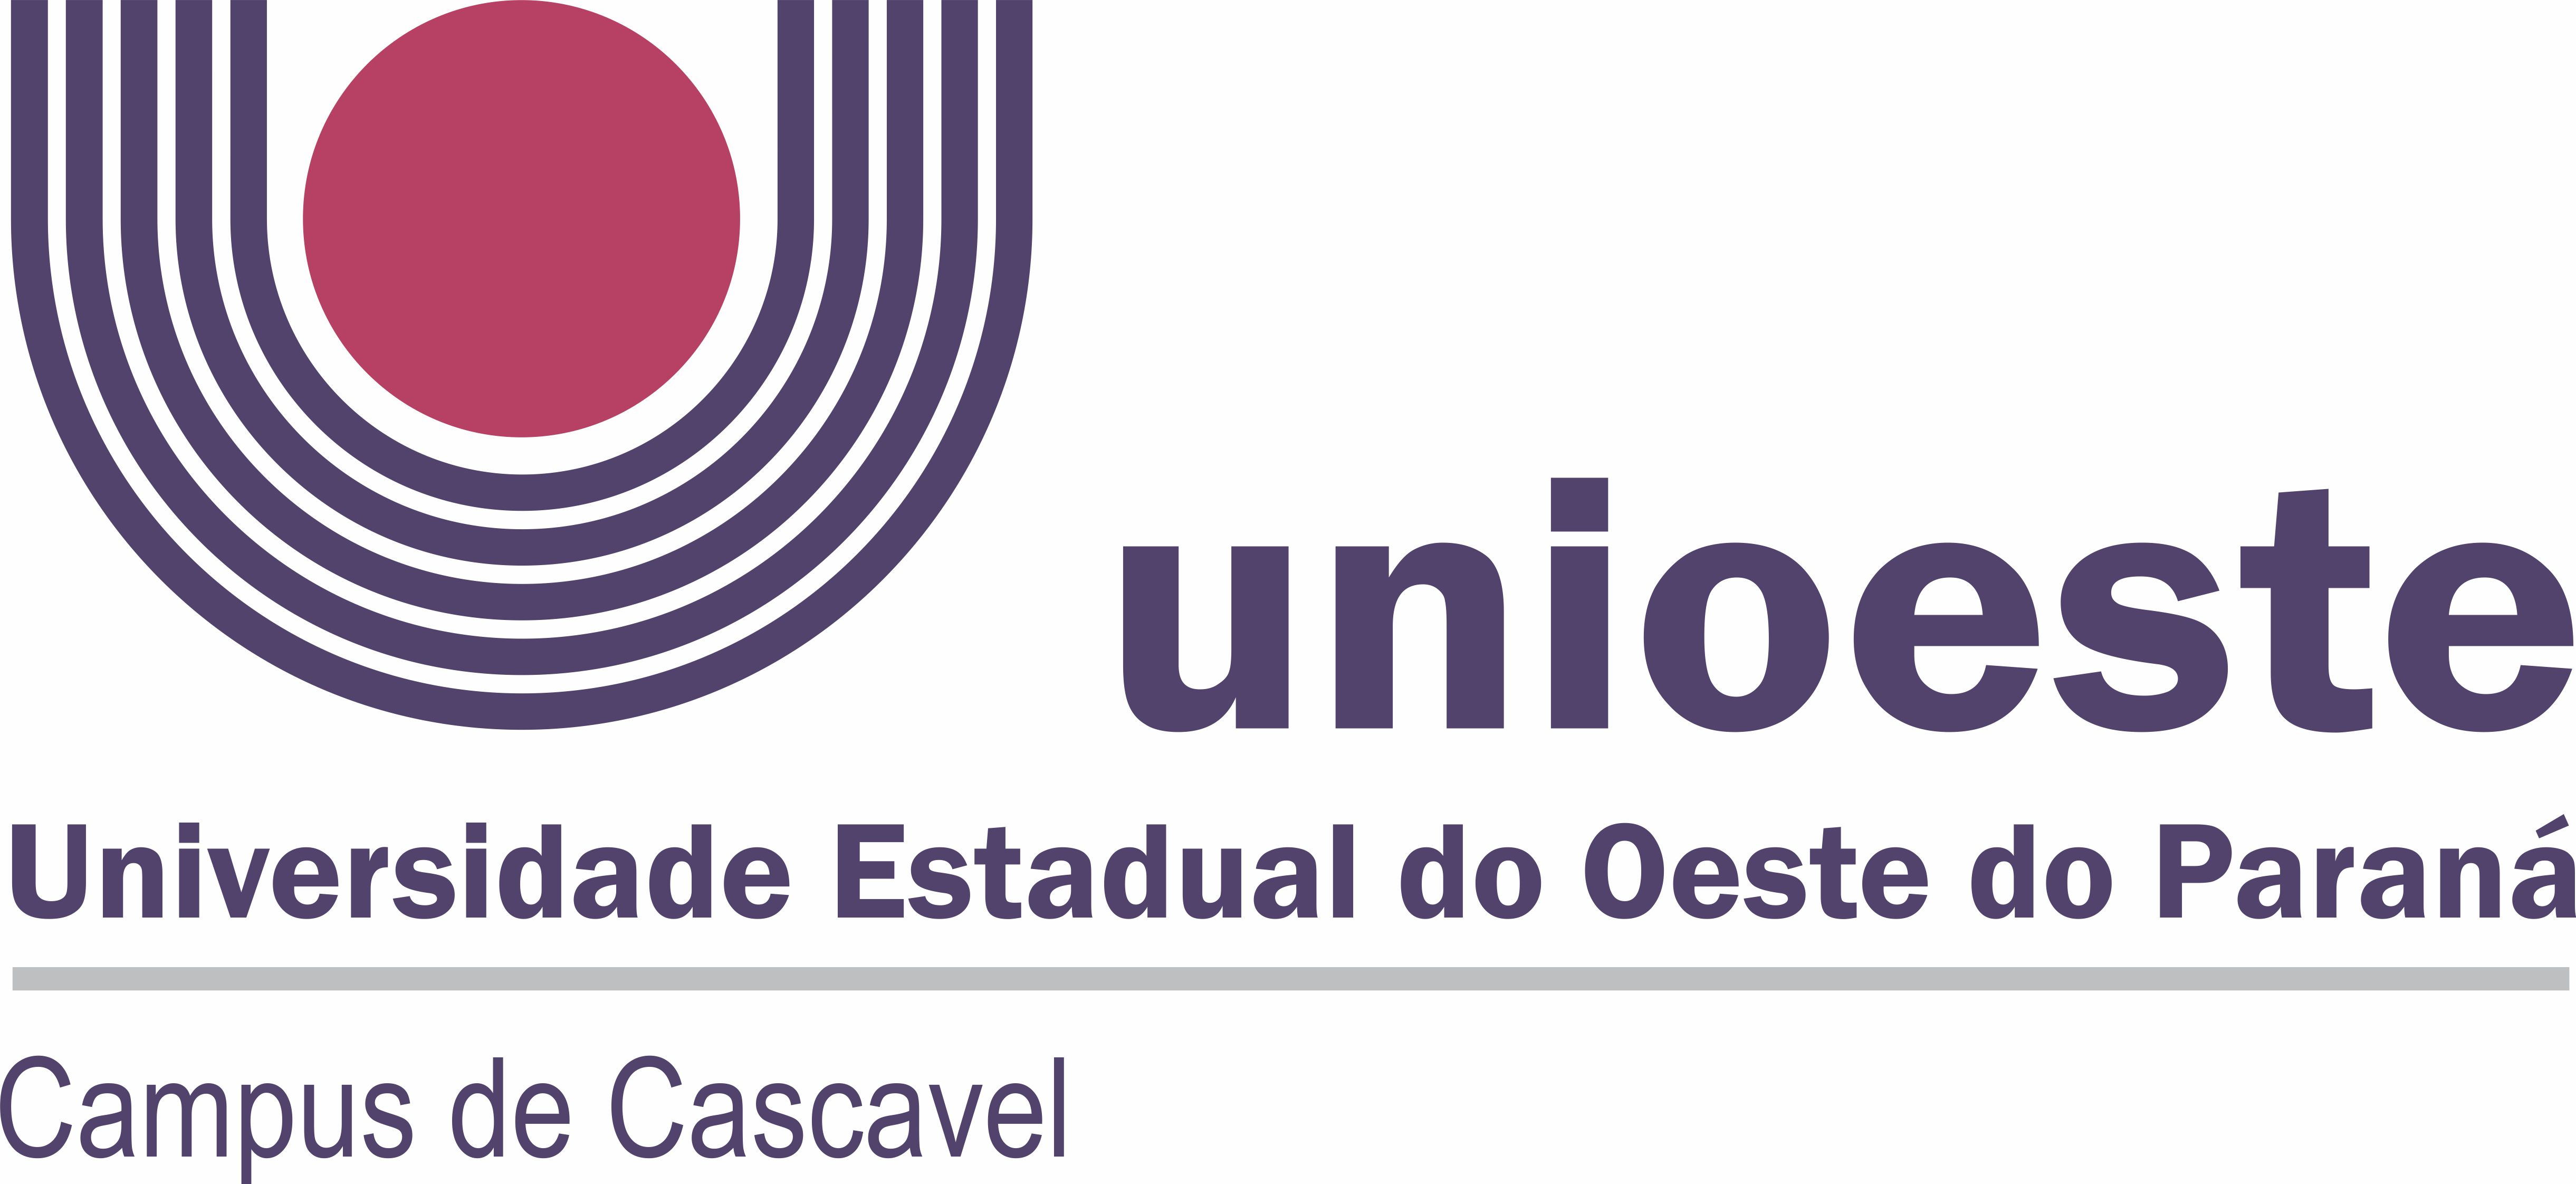 Logotipo Unioeste CAMPUS CASCAVEL